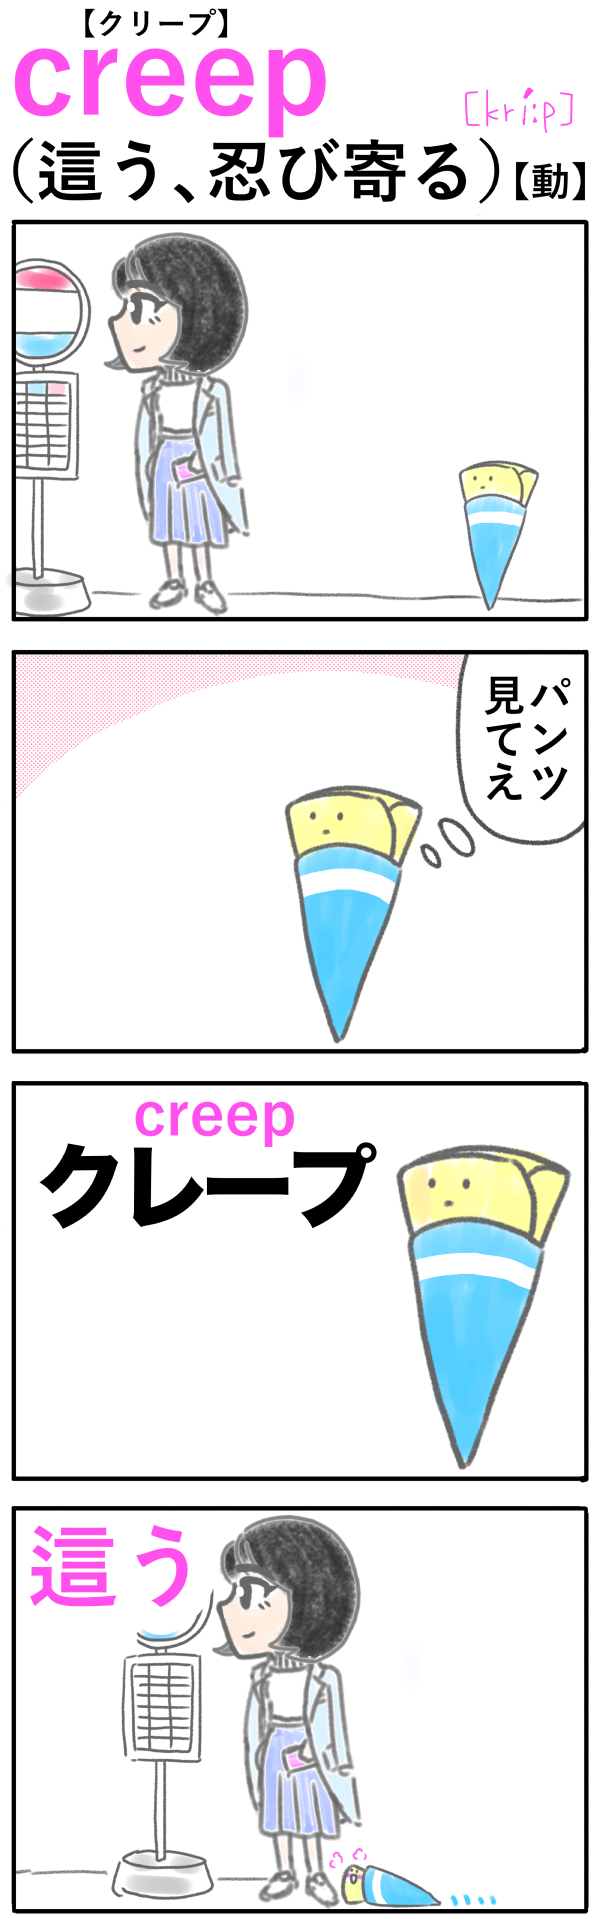 creep（這う、忍び寄る）の語呂合わせ英単語